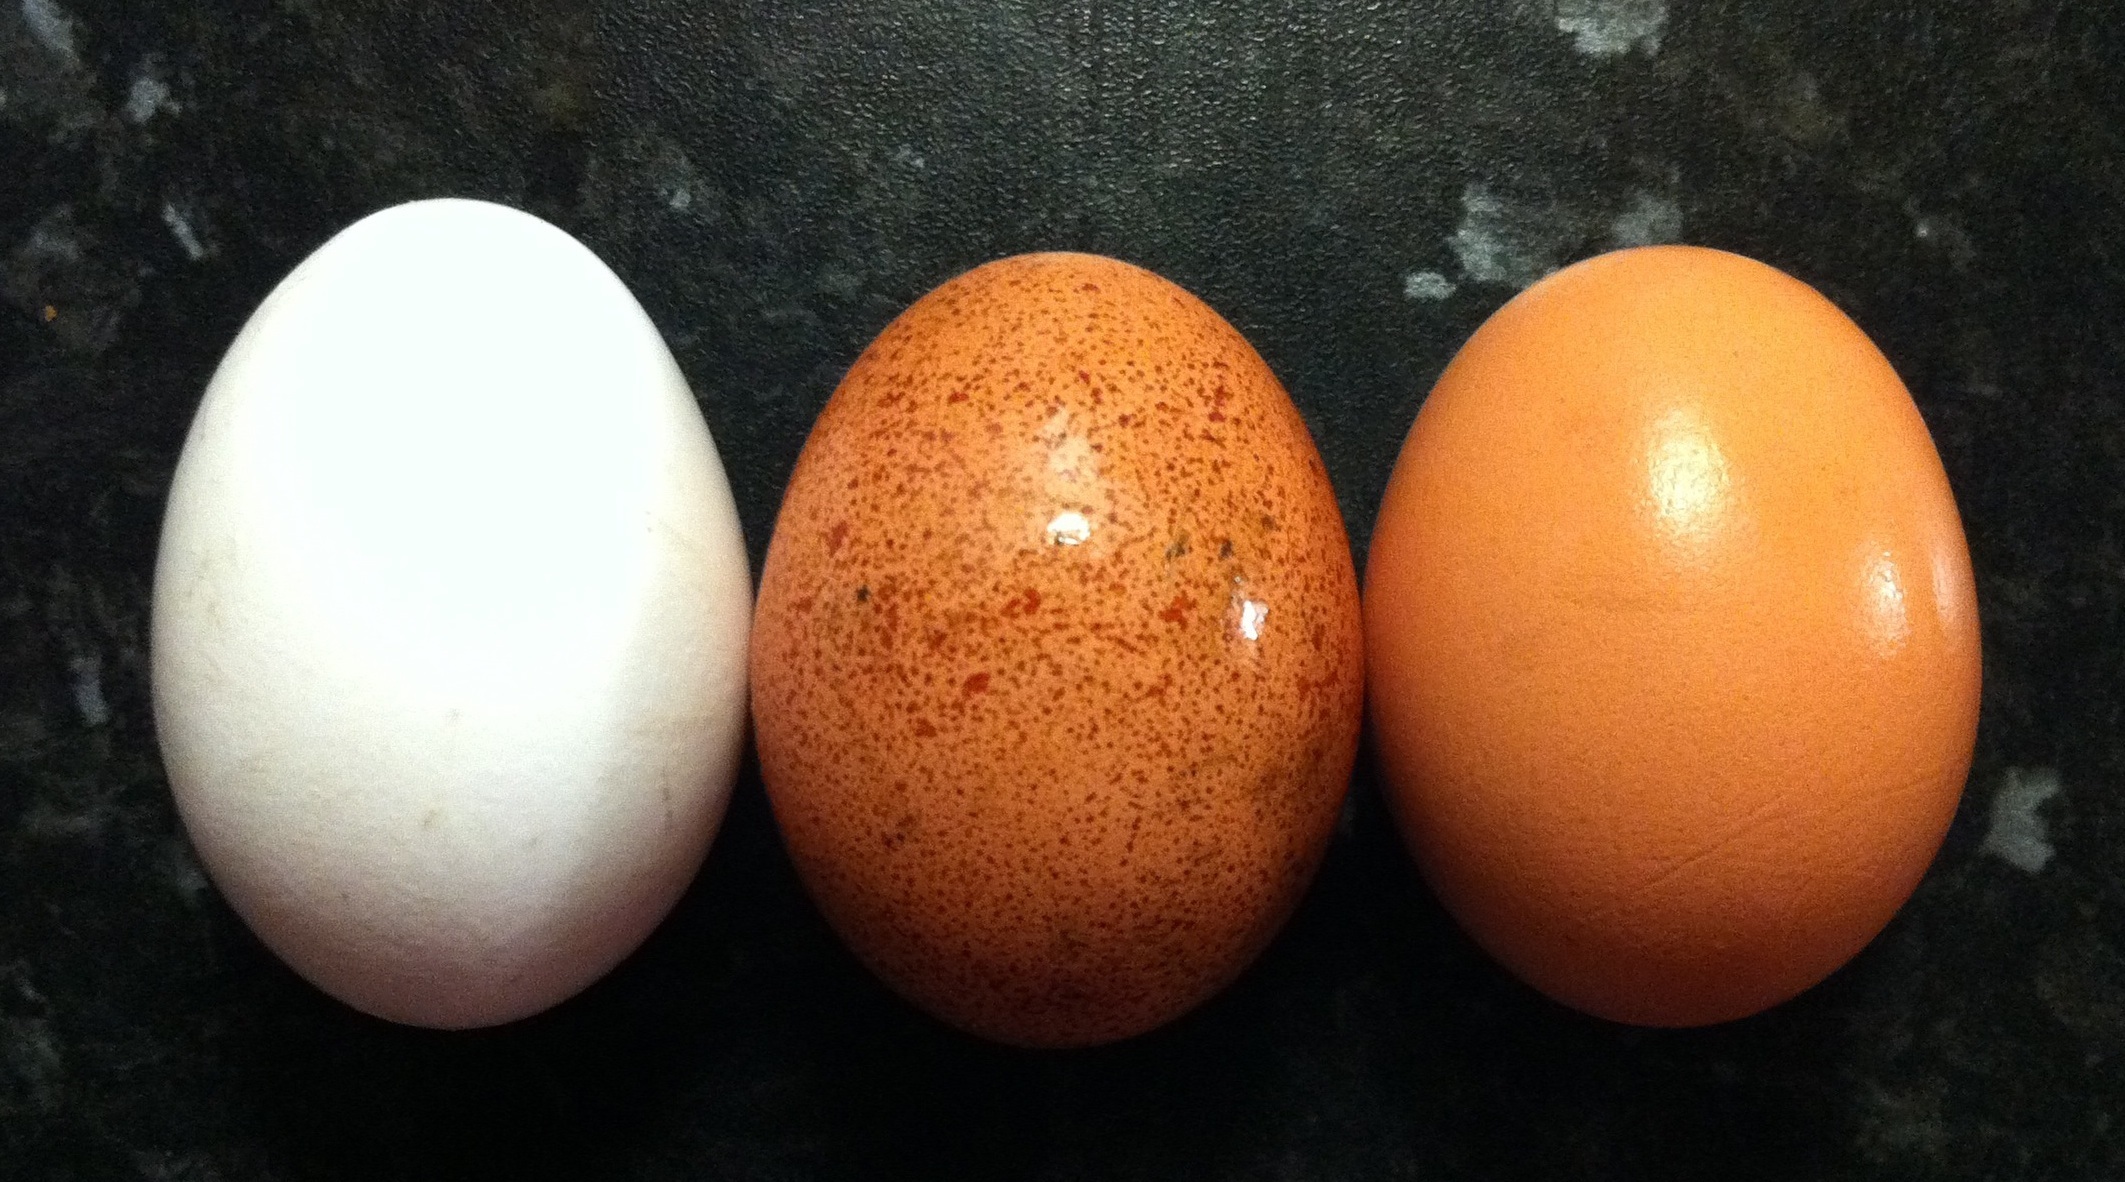 انواع تخم مرغ - تشخیص تخم مرغ فاسد